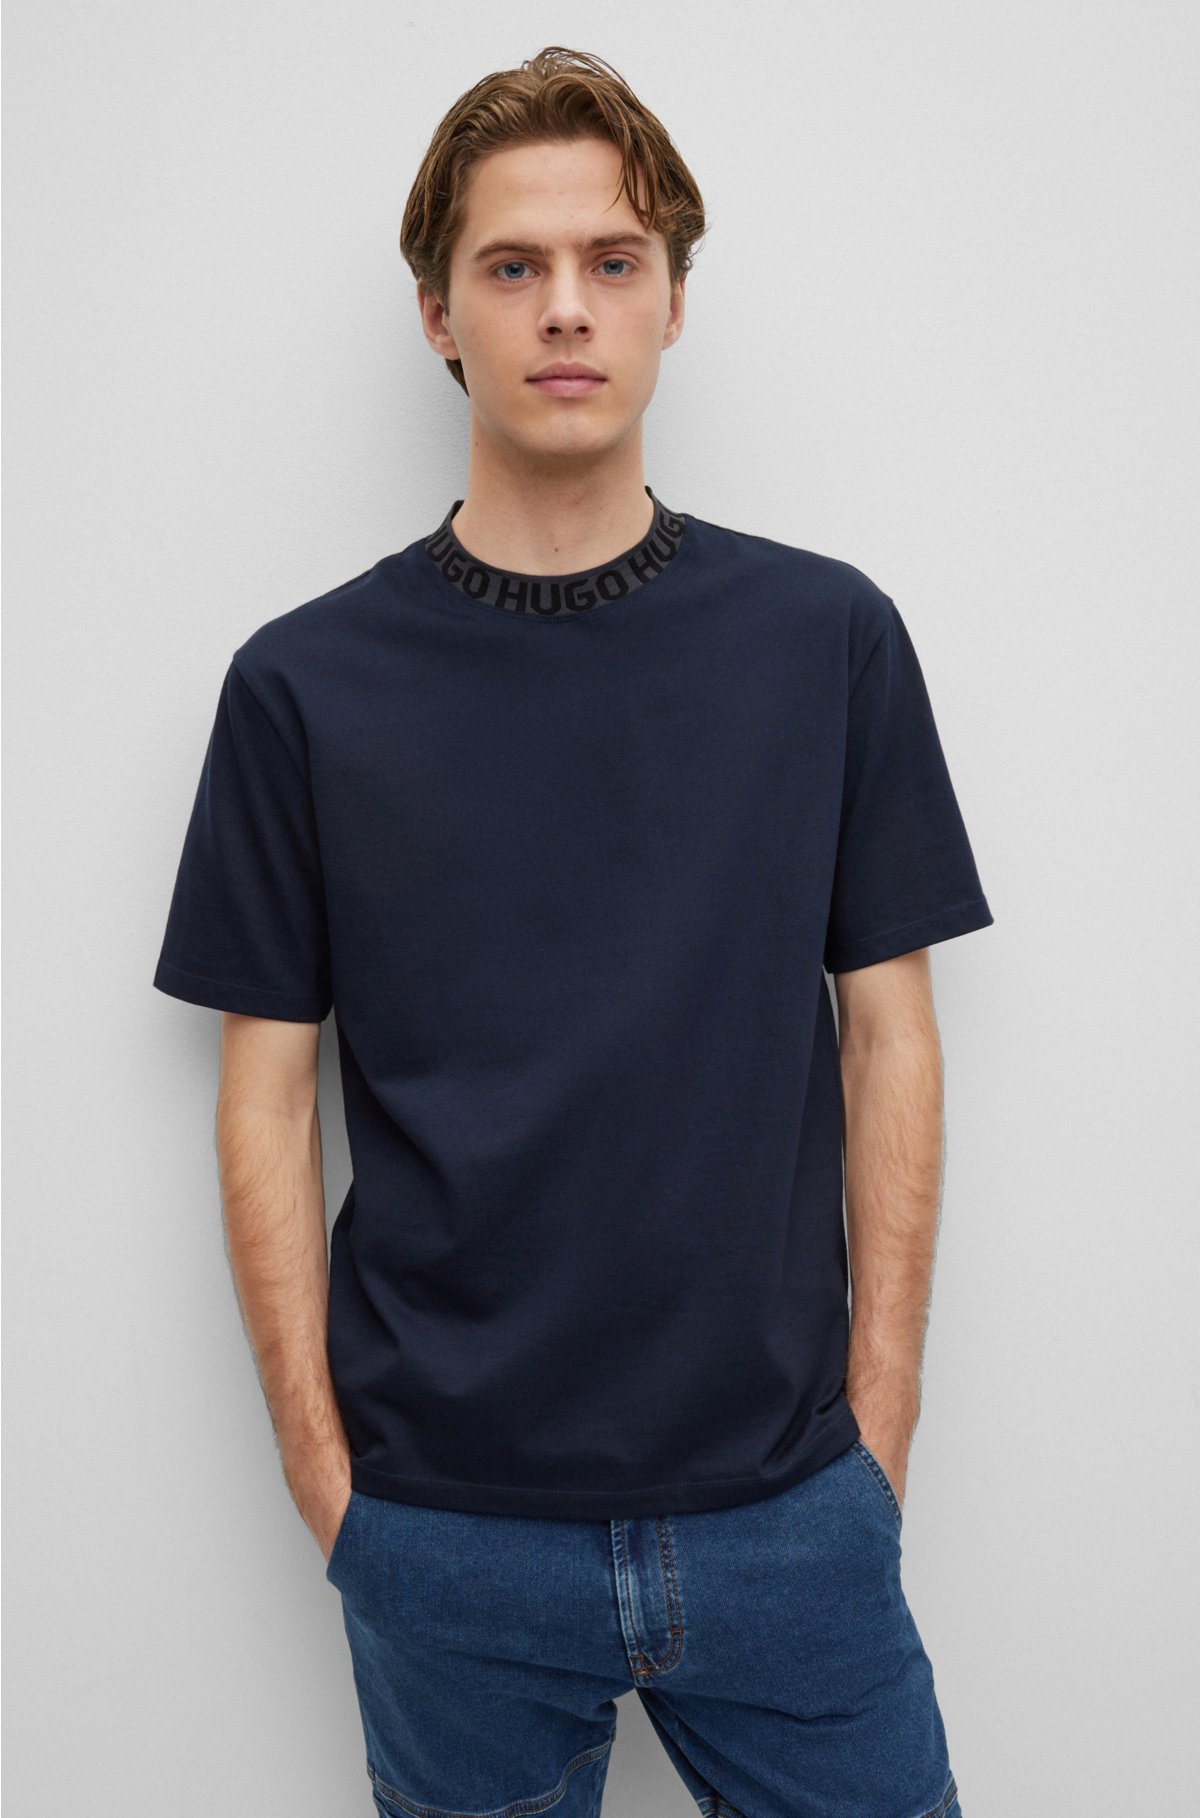 Knit cotton t-shirt - Men